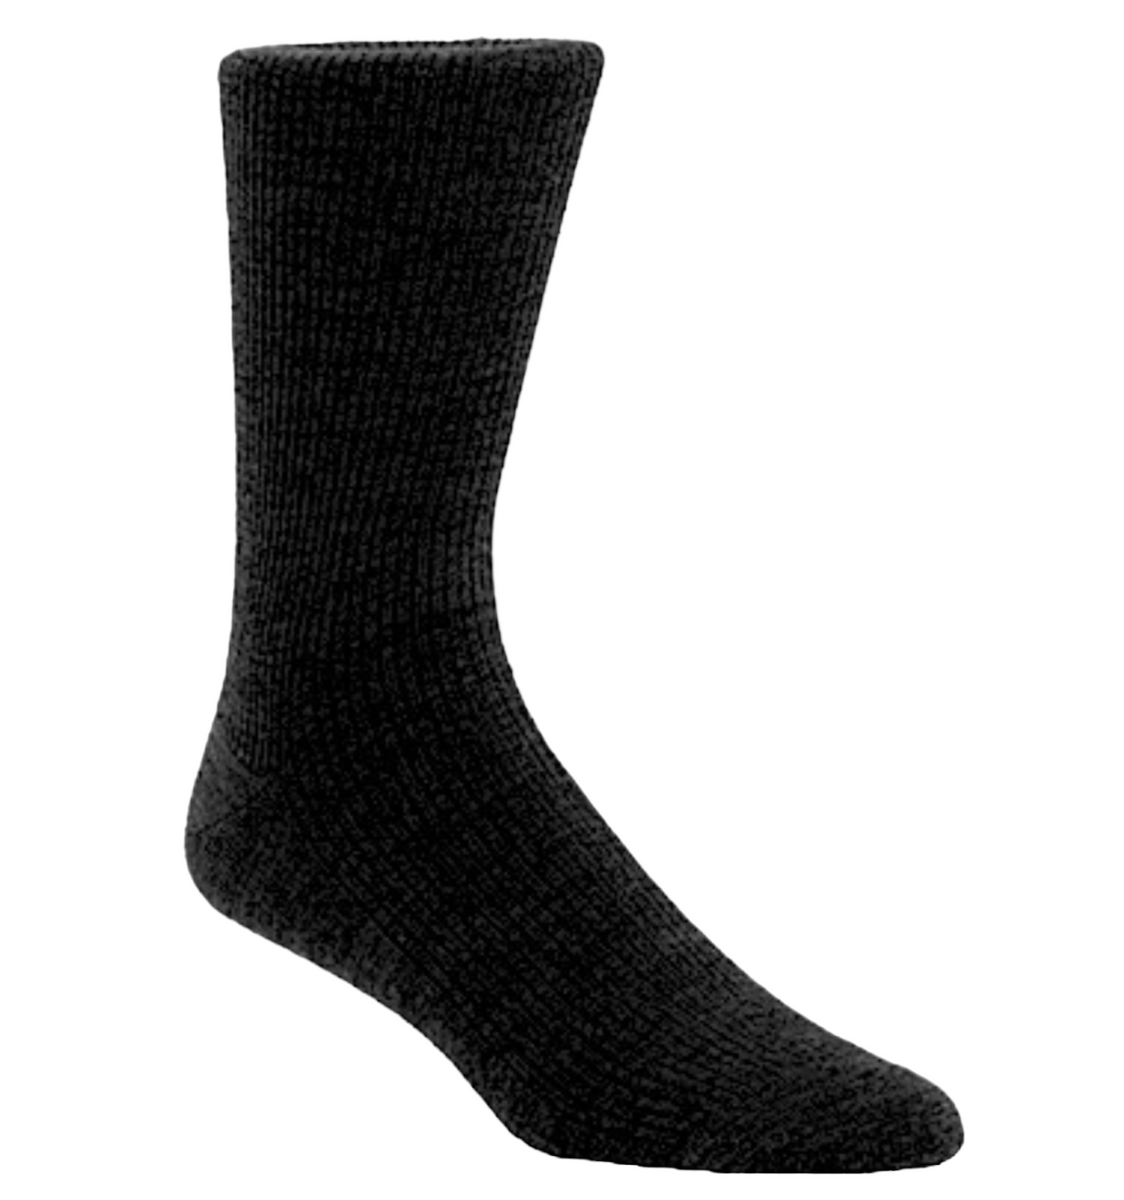 Window Merino Wool Dress Socks, Men's Socks